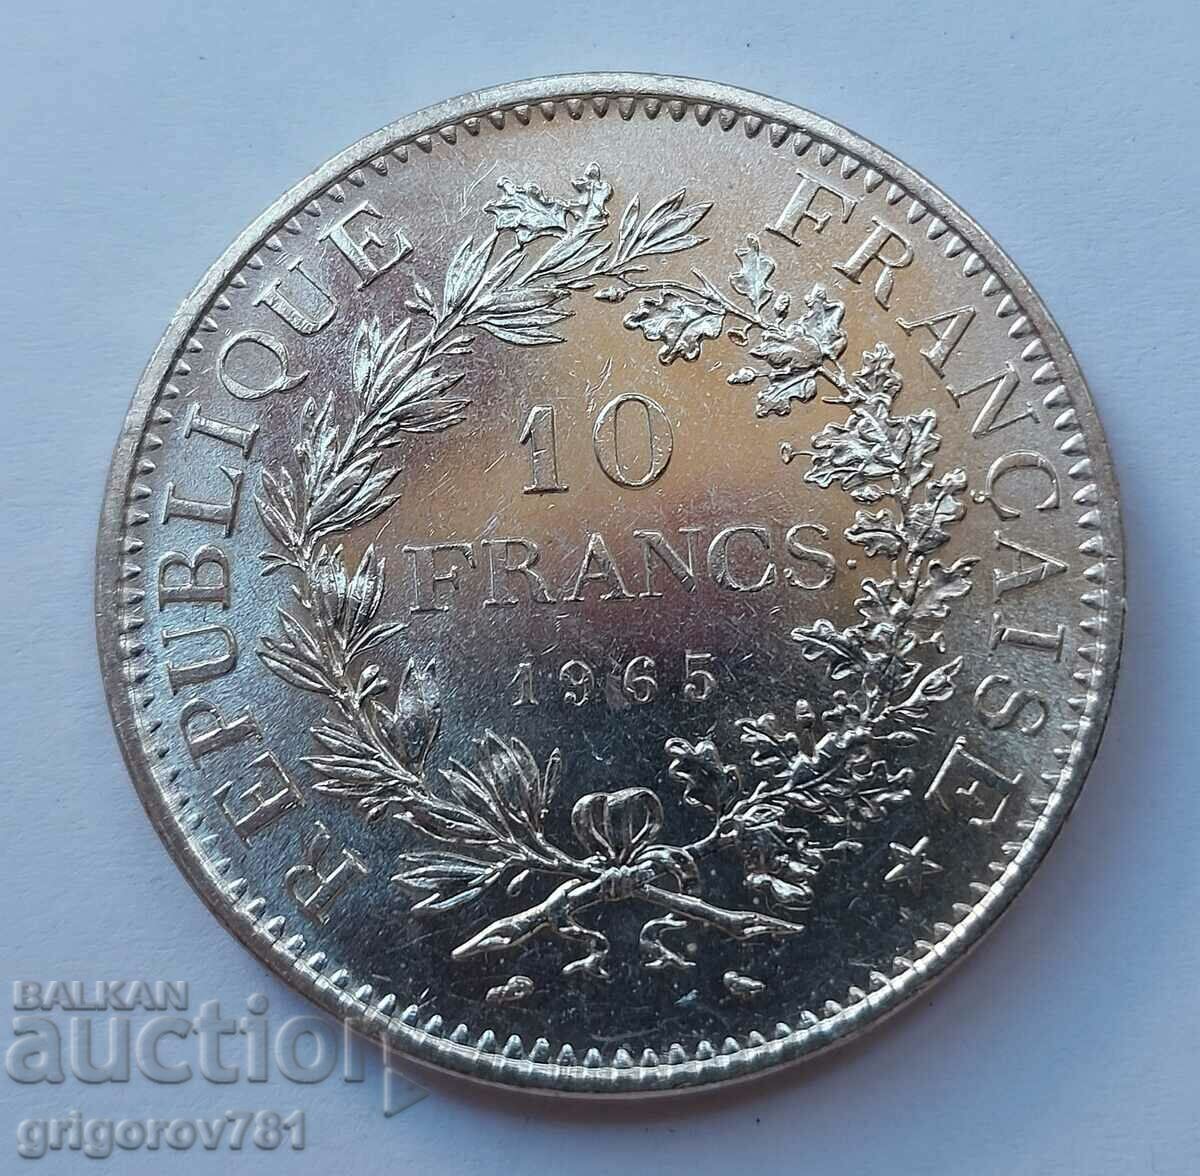 10 Franci Argint Franta 1965 - Moneda de argint #10